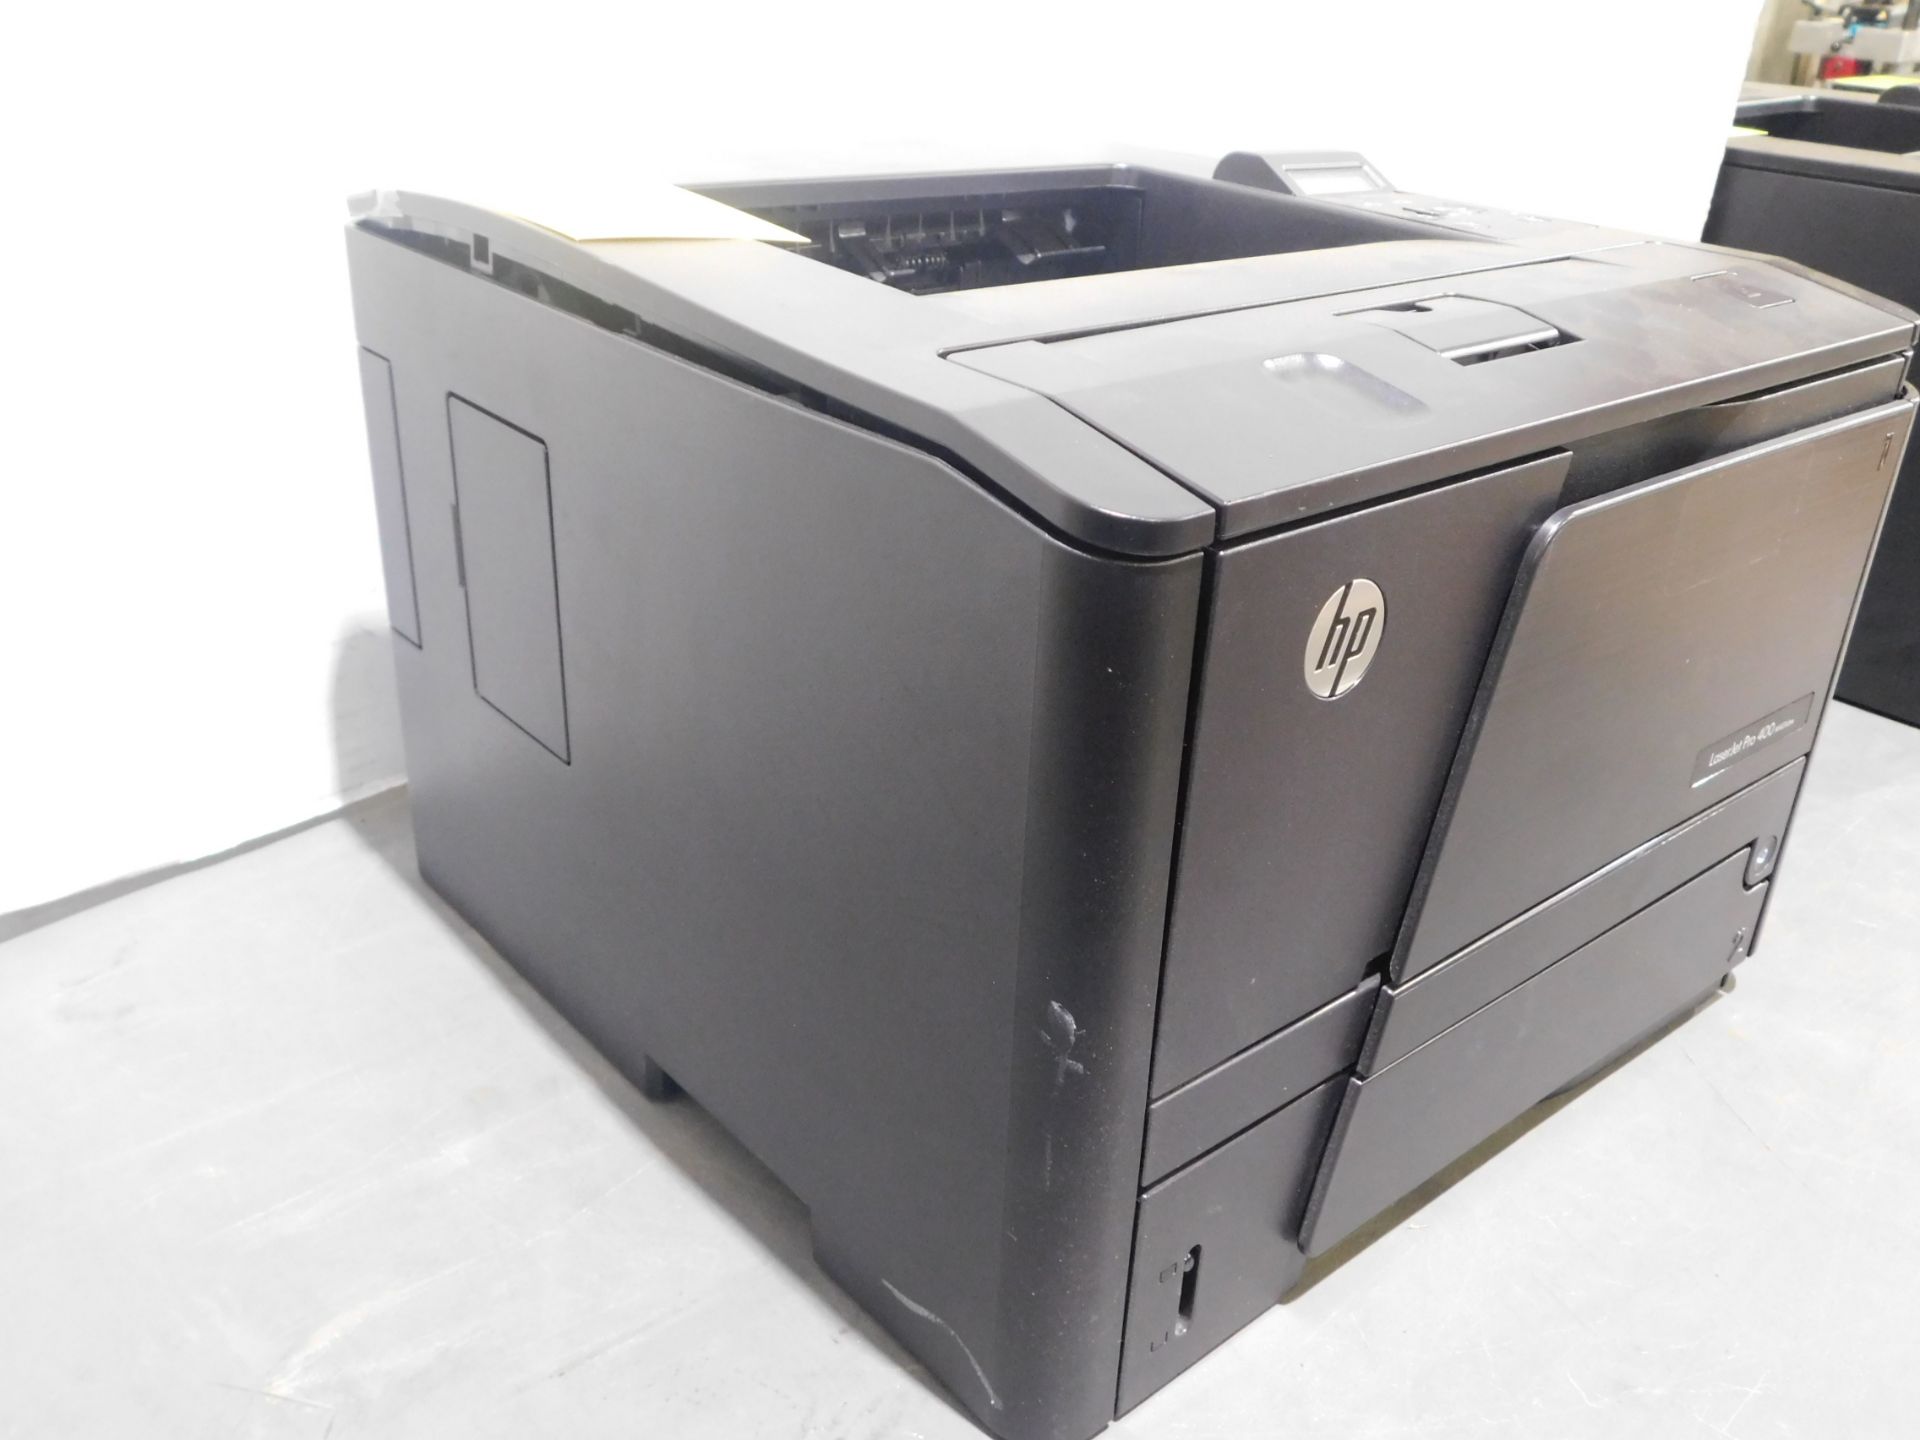 HP Laser Jet Pro 400/M401dne Printer, SN VNG3H02649 - Image 3 of 4